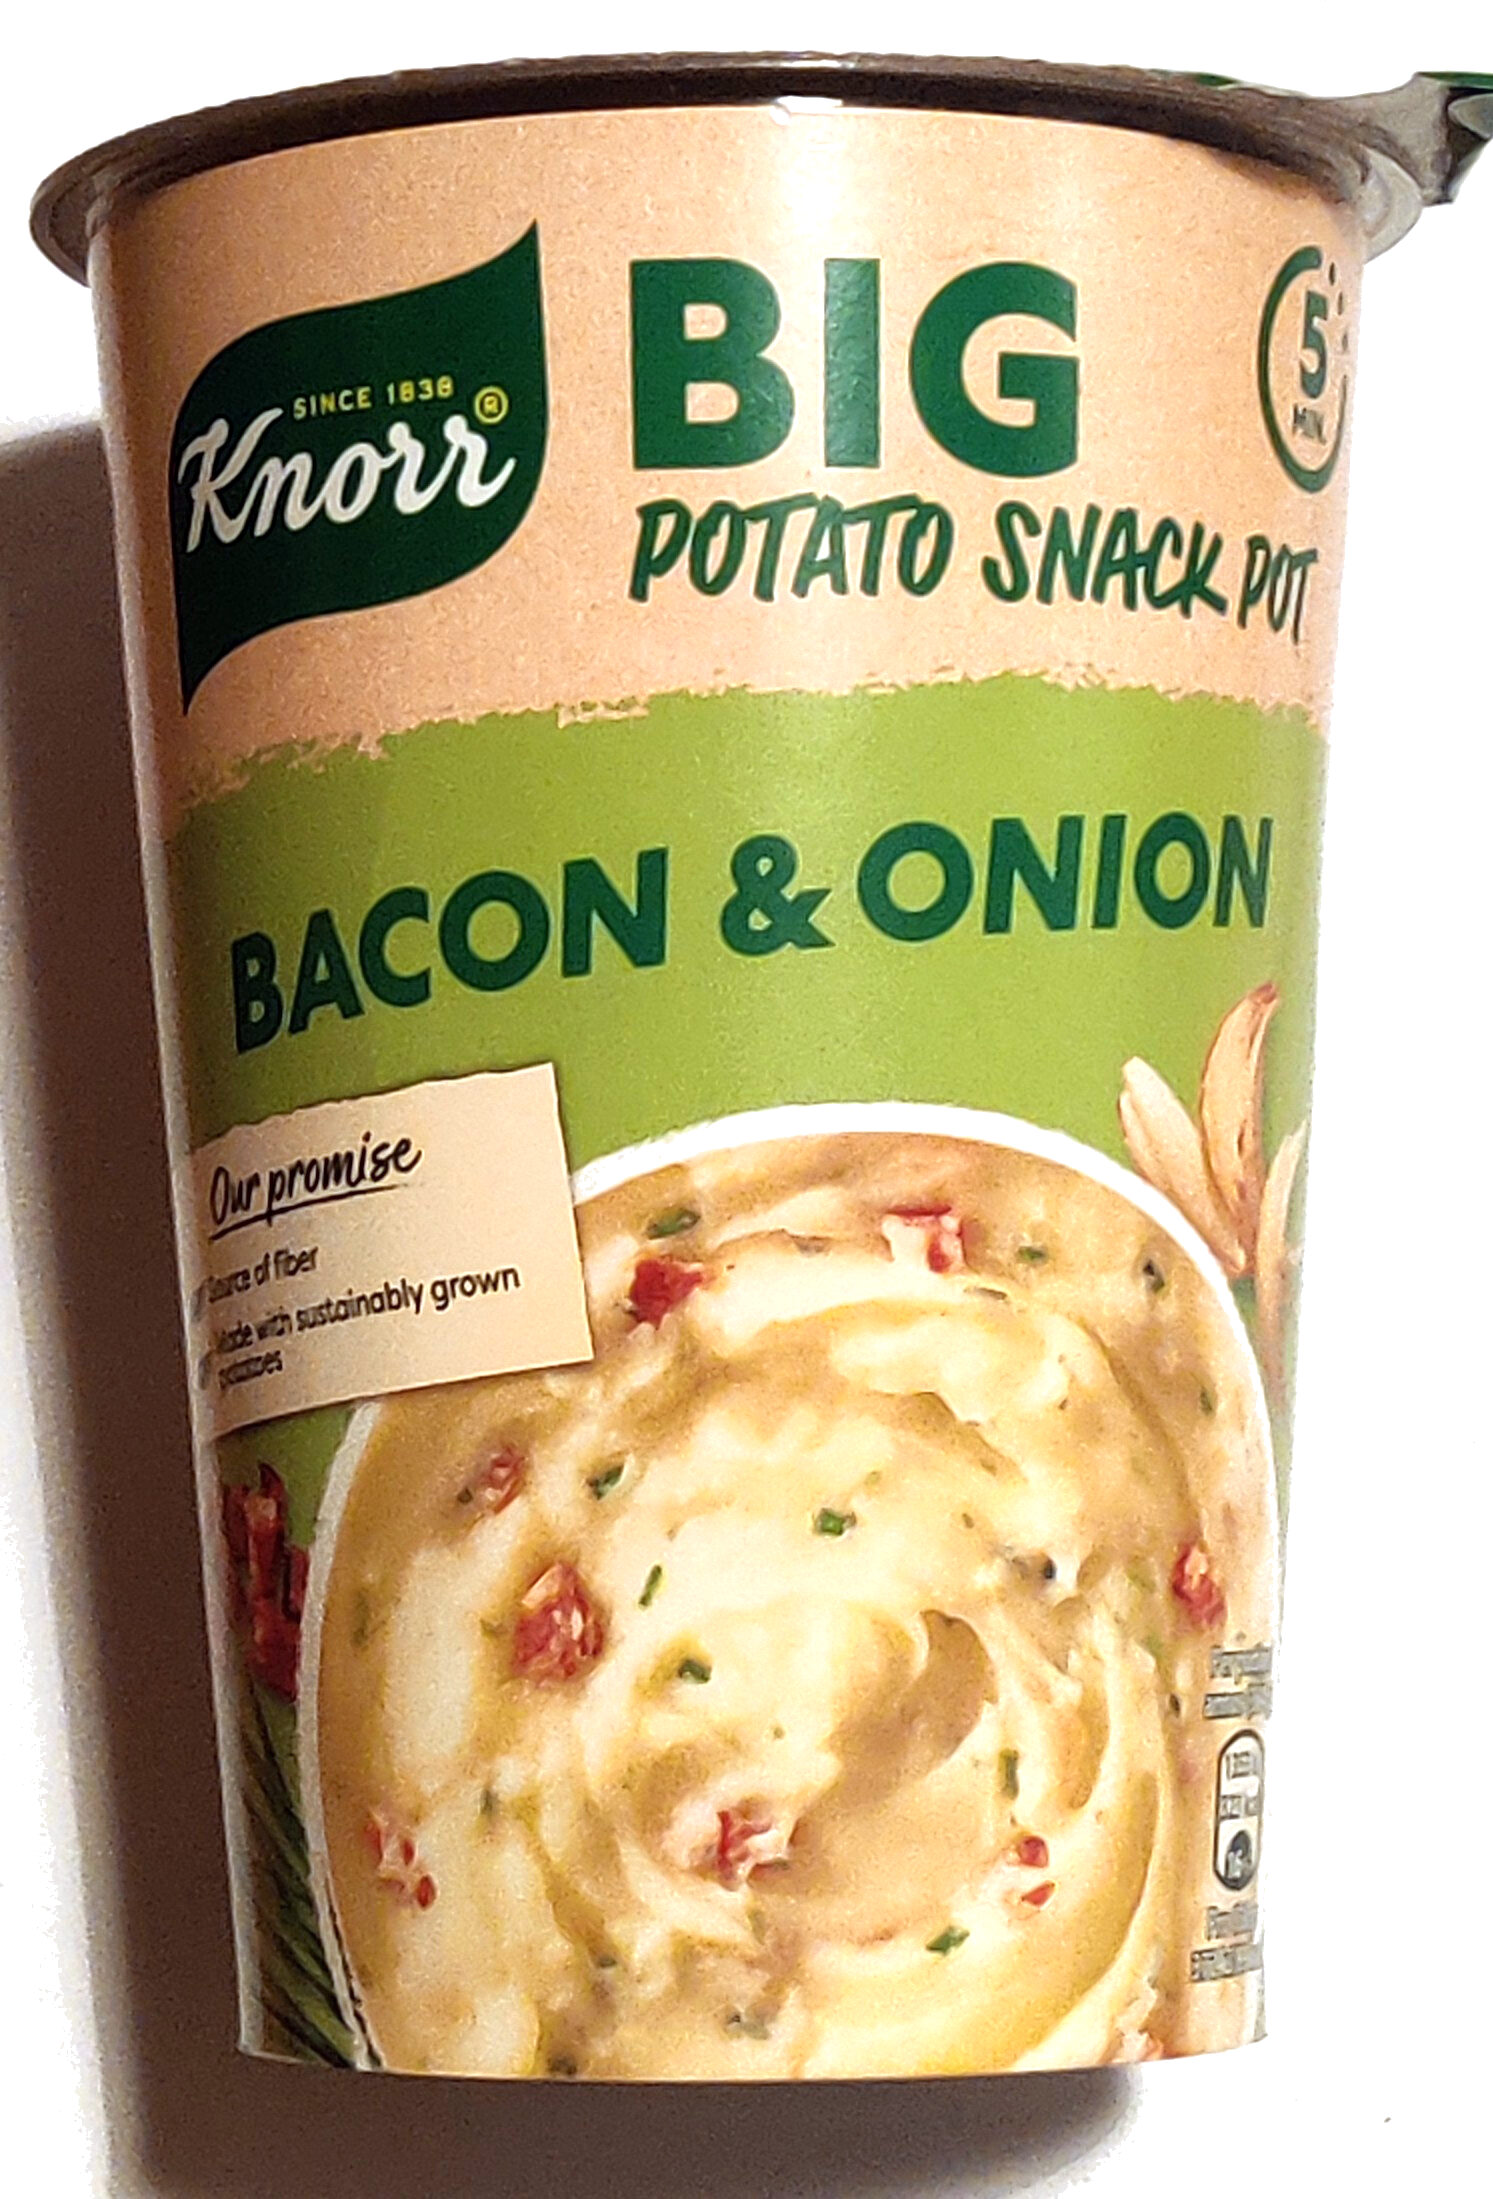 Big Potato Snack Pot - Bacon & Onion - Produkt - sv